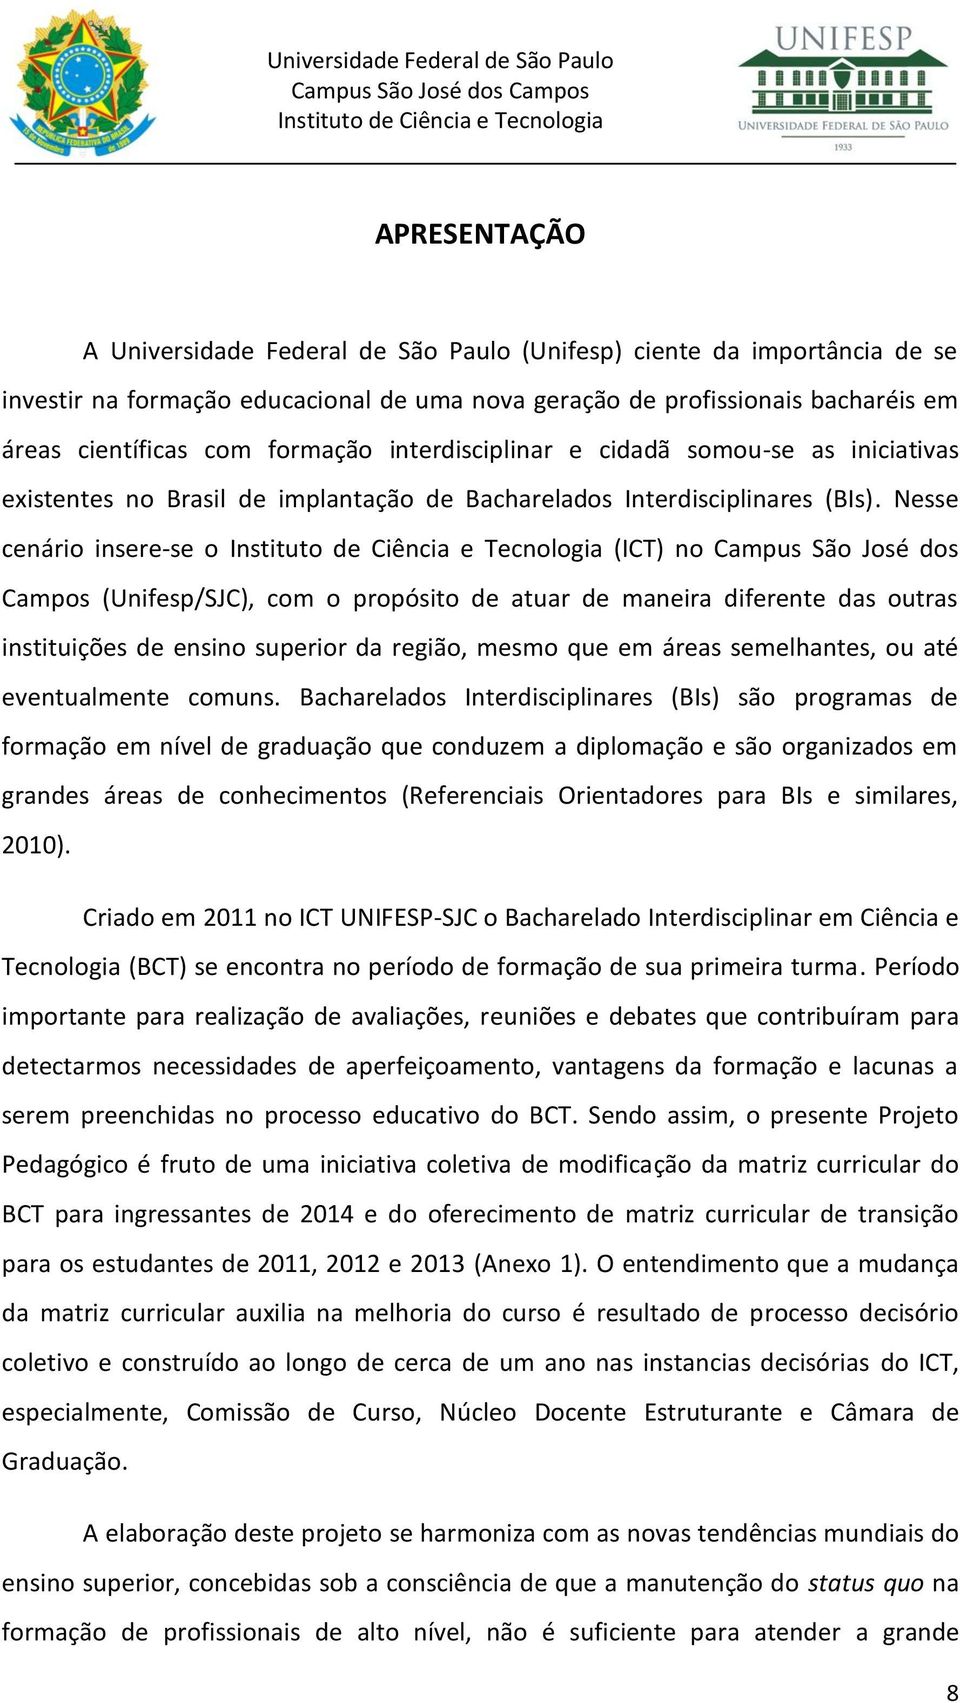 Nesse cenário insere-se o (ICT) no Campus São José dos Campos (Unifesp/SJC), com o propósito de atuar de maneira diferente das outras instituições de ensino superior da região, mesmo que em áreas